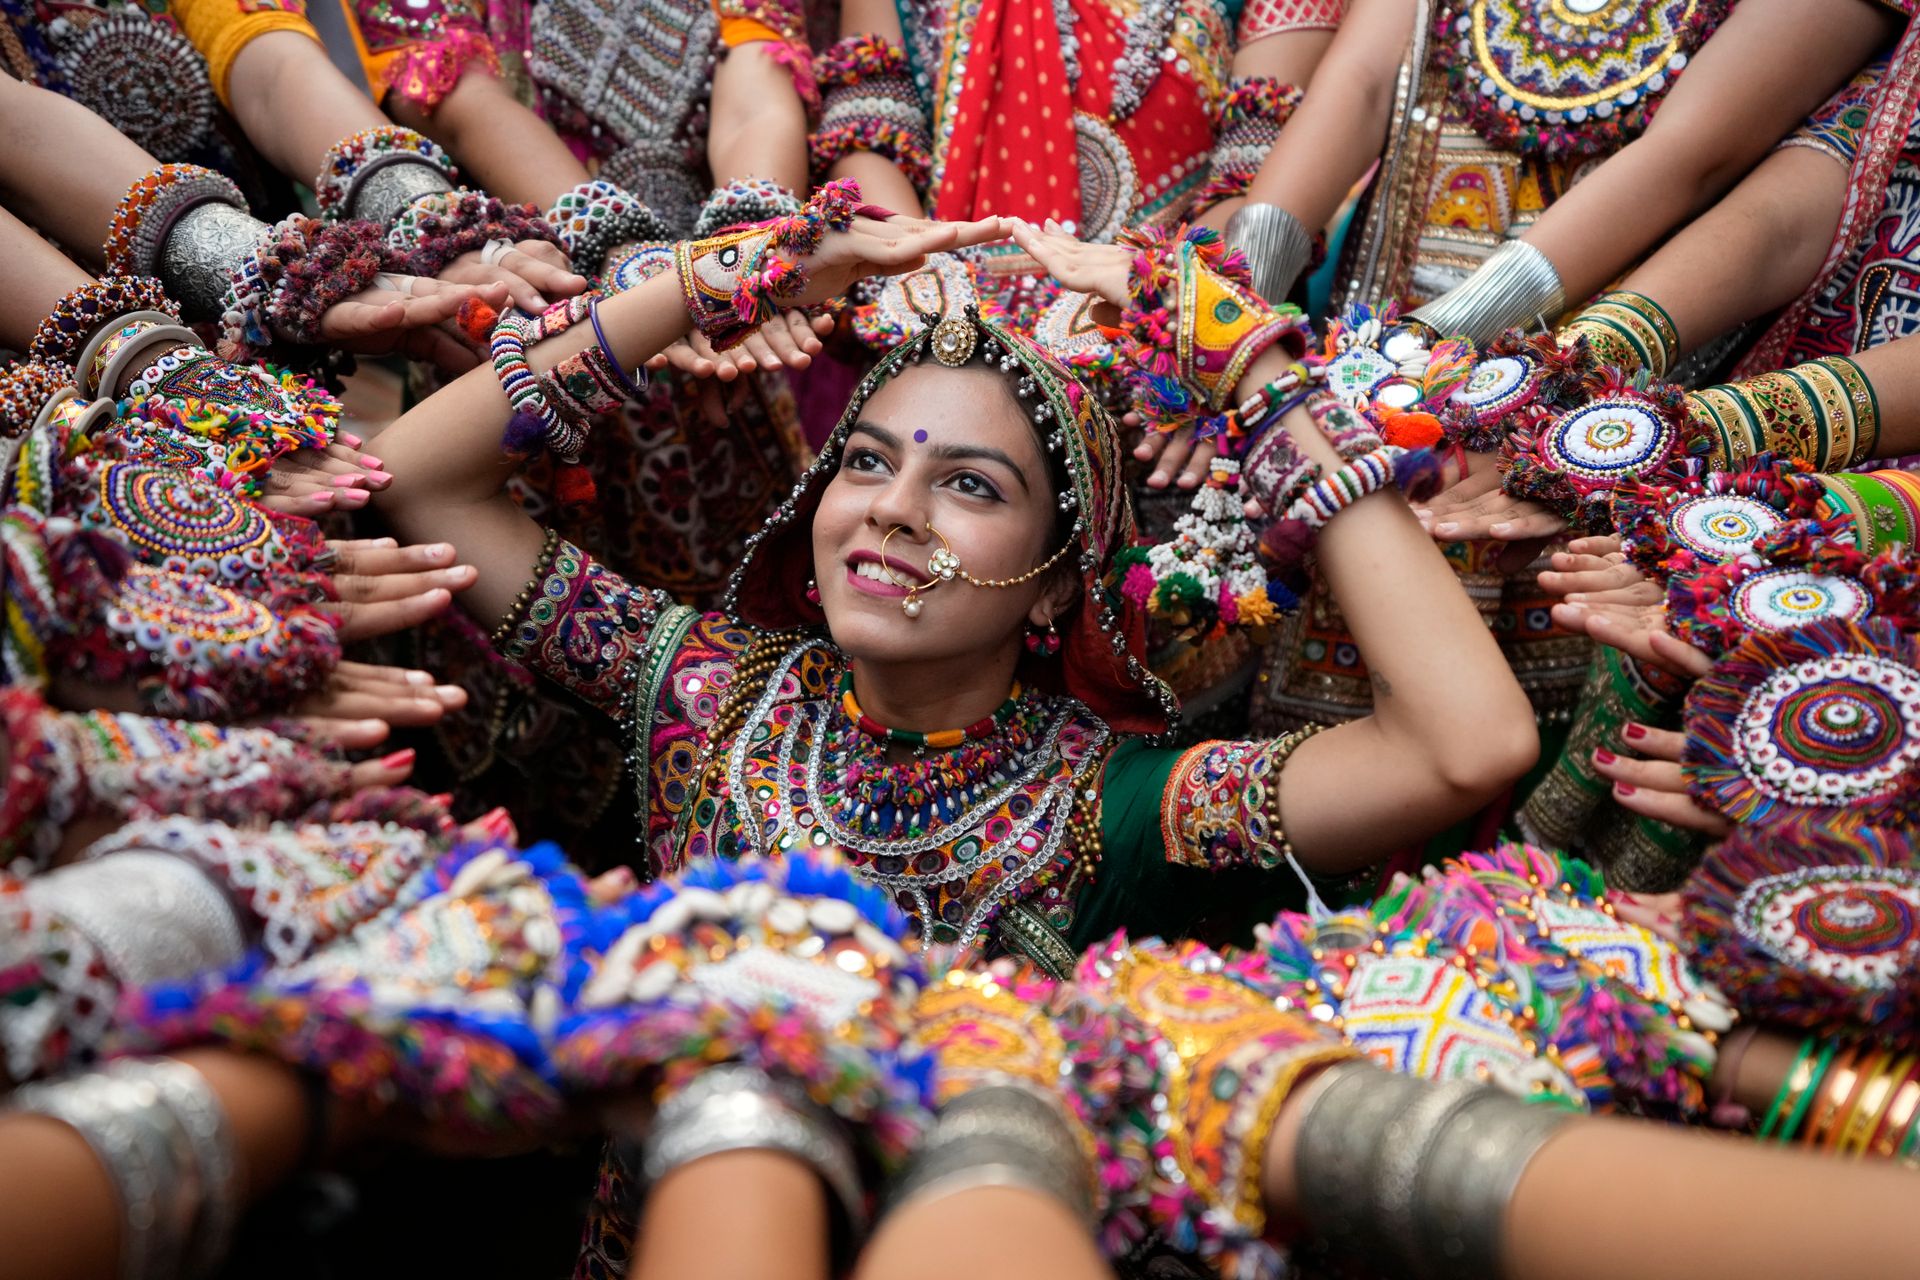 En jente med tradisjonell sminke, henna-tatoveringer og smykker står i en sirkel dannet av hendene til andre dansere, som er kledd i fargerike klær og mange perle-armbånd. 